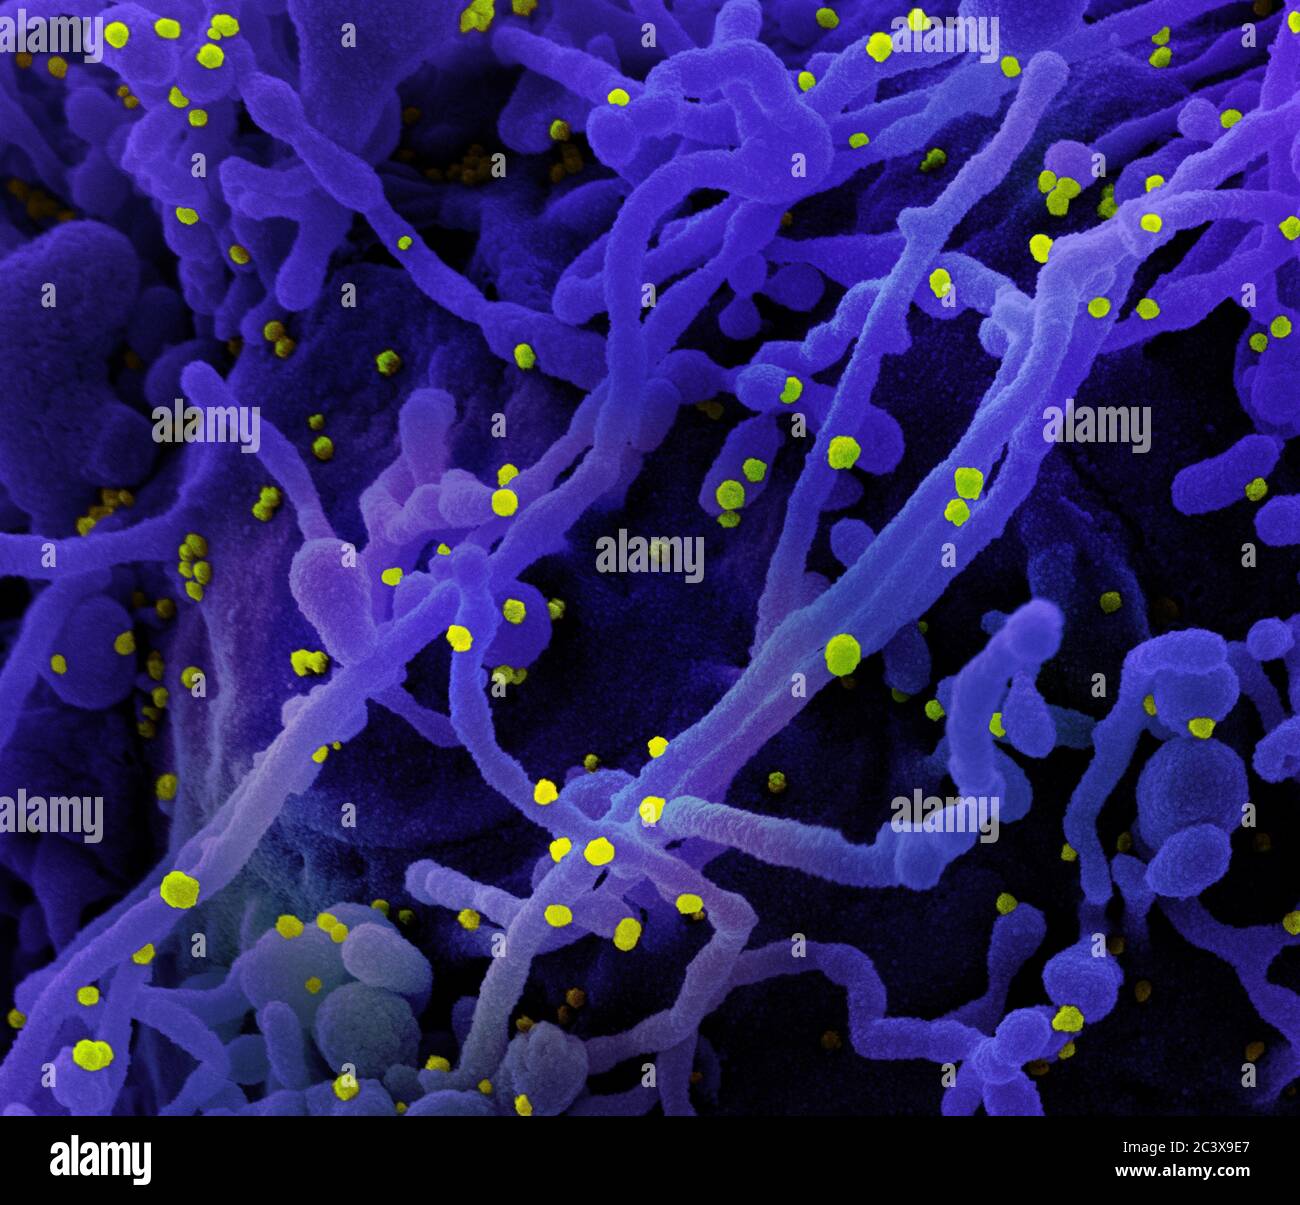 Novel Coronavirus SARS-COV-2 micrografia elettronica a scansione colored di una cellula (viola) infettata con particelle di virus SARS-COV-2 (giallo), isolata da un campione di paziente. Immagine catturata presso il NIAID Integrated Research Facility (IRF) di Fort Detrick, Maryland. Foto Stock